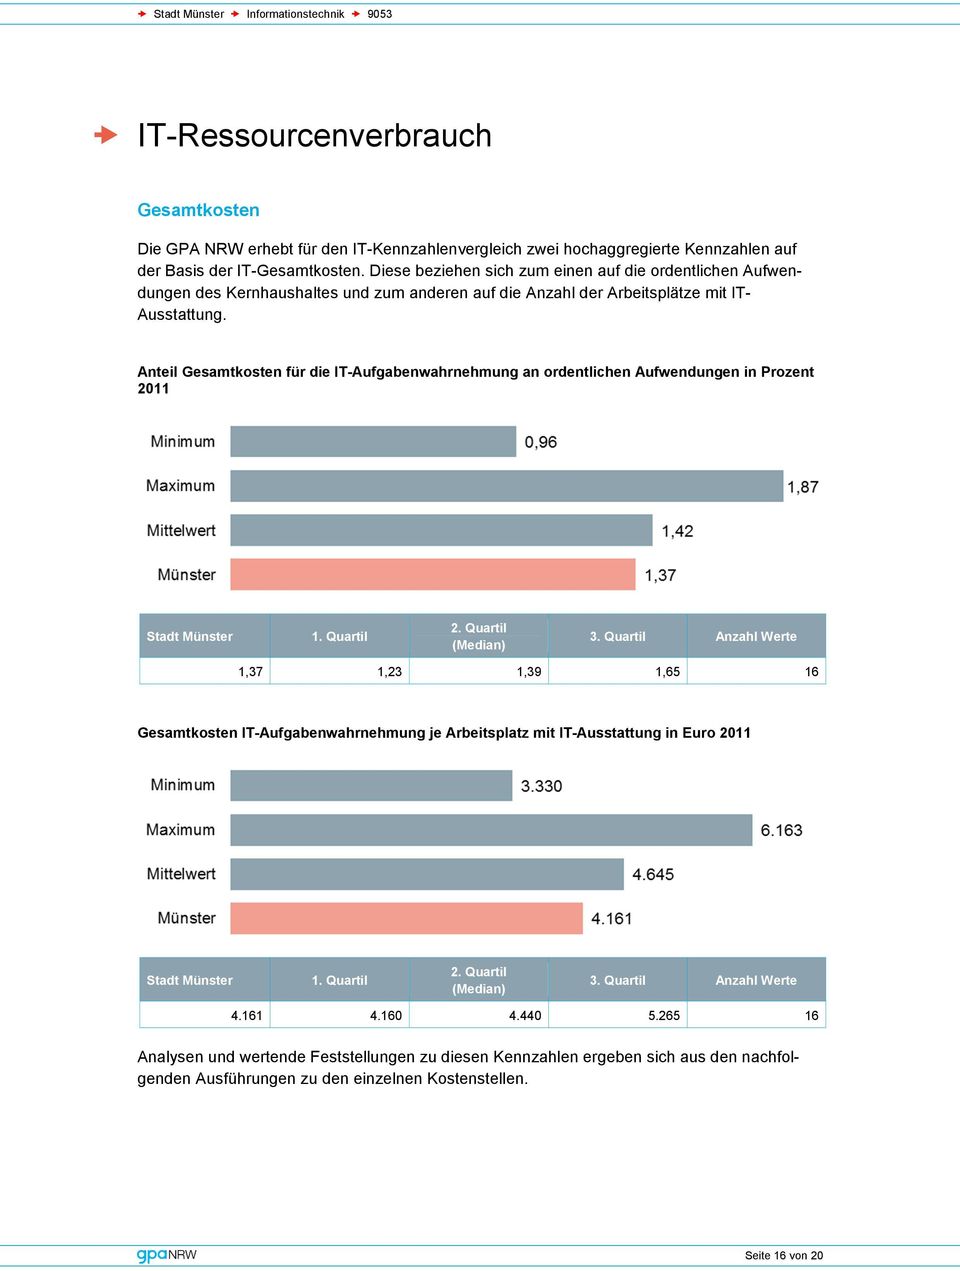 Anteil Gesamtkosten für die IT-Aufgabenwahrnehmung an ordentlichen Aufwendungen in Prozent 2011 Stadt Münster 1. Quartil 2. Quartil (Median) 3.